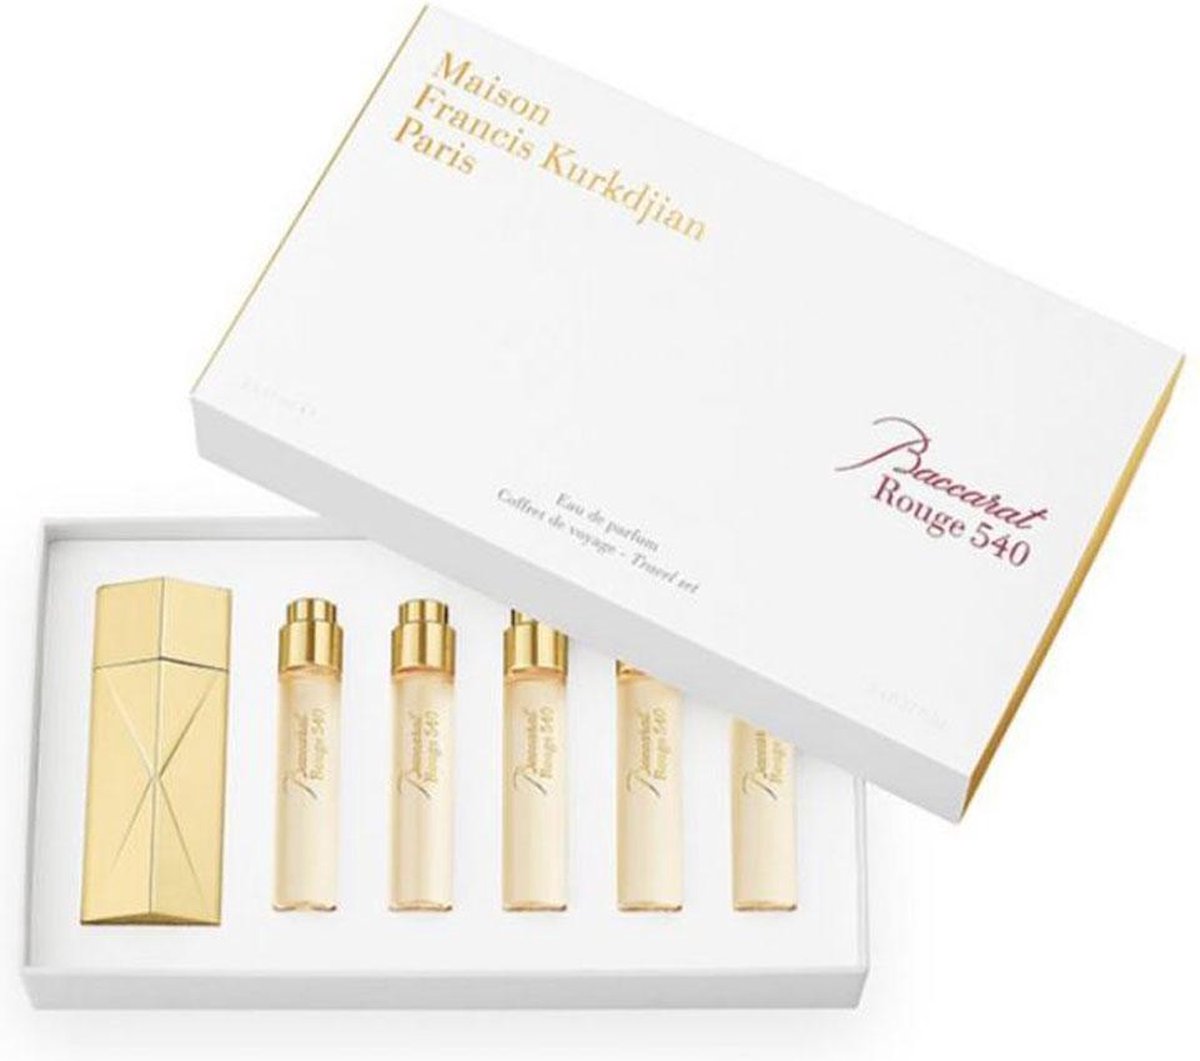 Maison Francis Kurkdjian Baccarat Rouge 540 - 5 x 11 ml eau de parfum recharge purse spray + travel spray case gold edition - unisexparfum